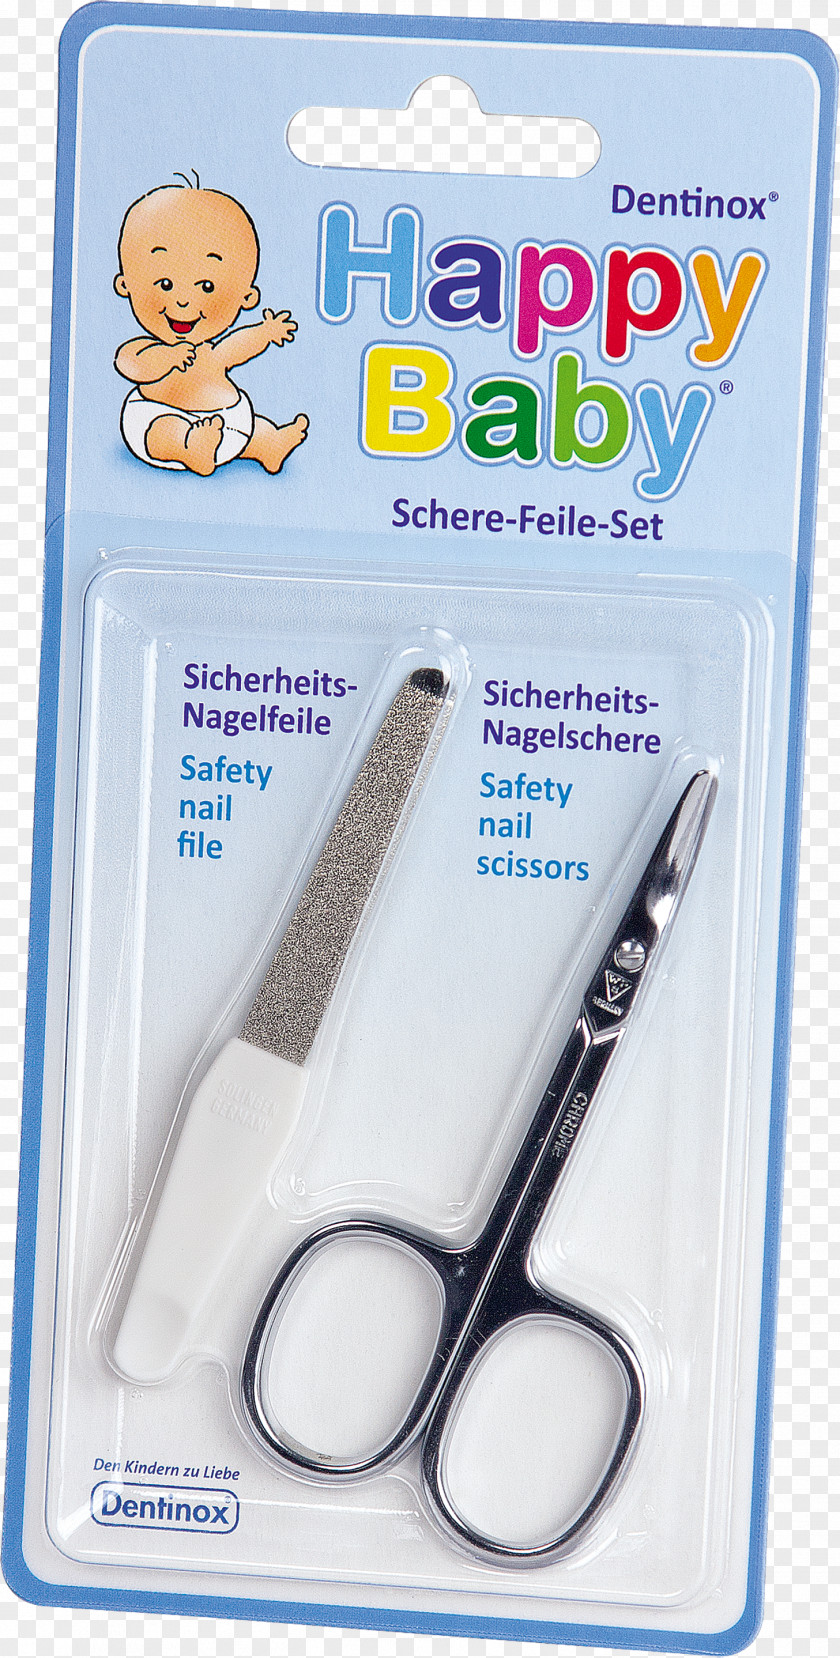 Baby Happy Dentinox Infant Scissors Price Nasensauger PNG